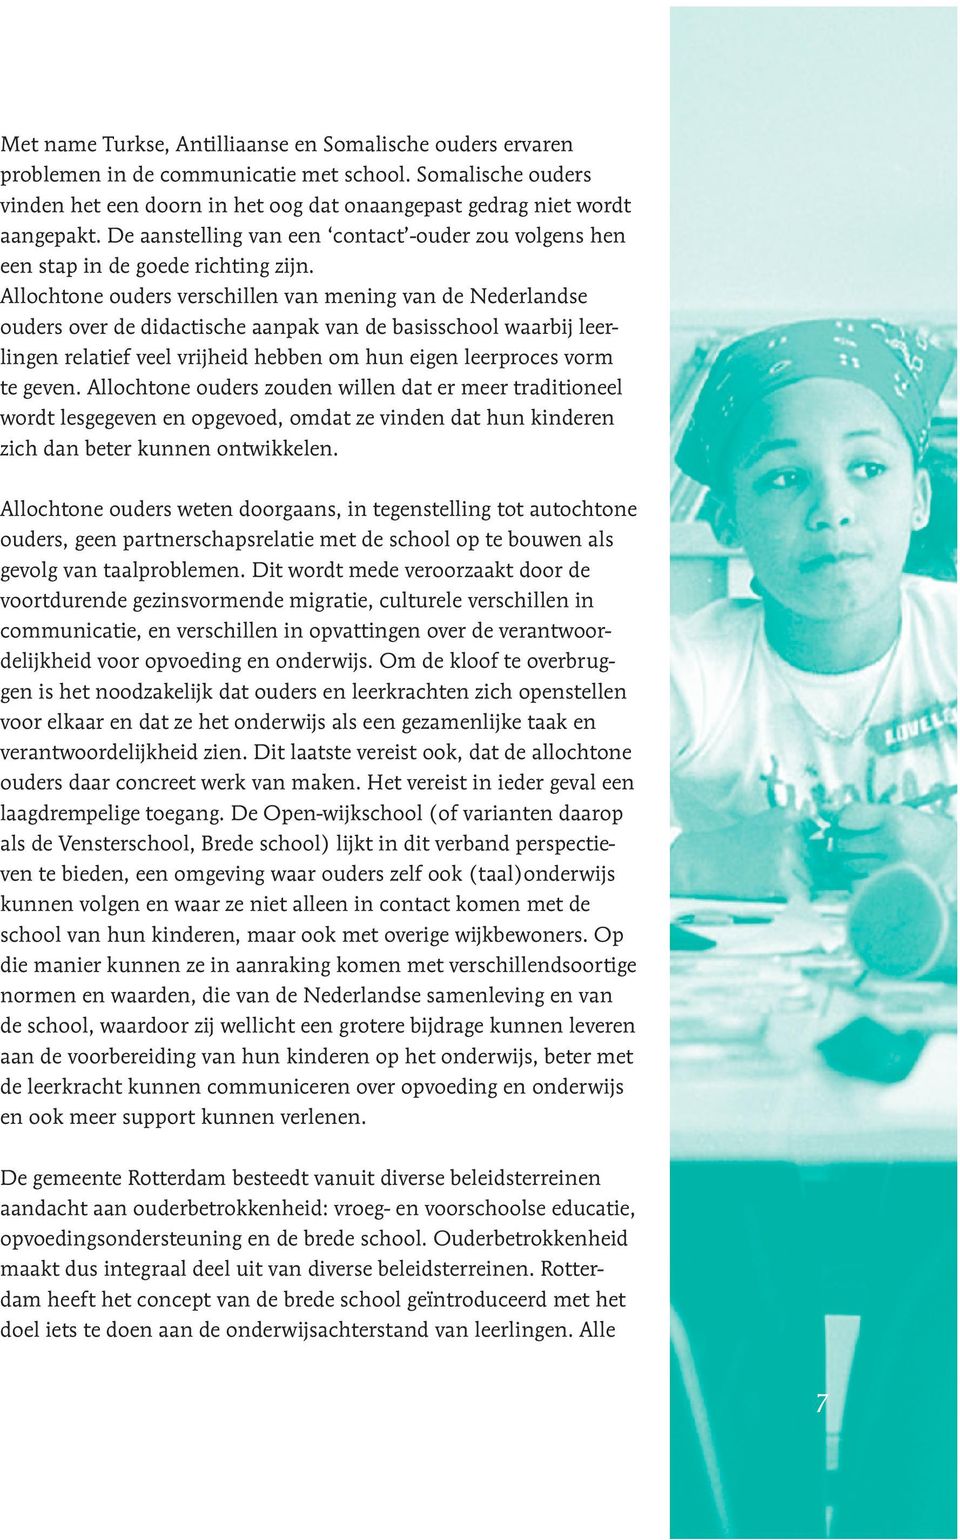 Allochtone ouders verschillen van mening van de Nederlandse ouders over de didactische aanpak van de basisschool waarbij leerlingen relatief veel vrijheid hebben om hun eigen leerproces vorm te geven.